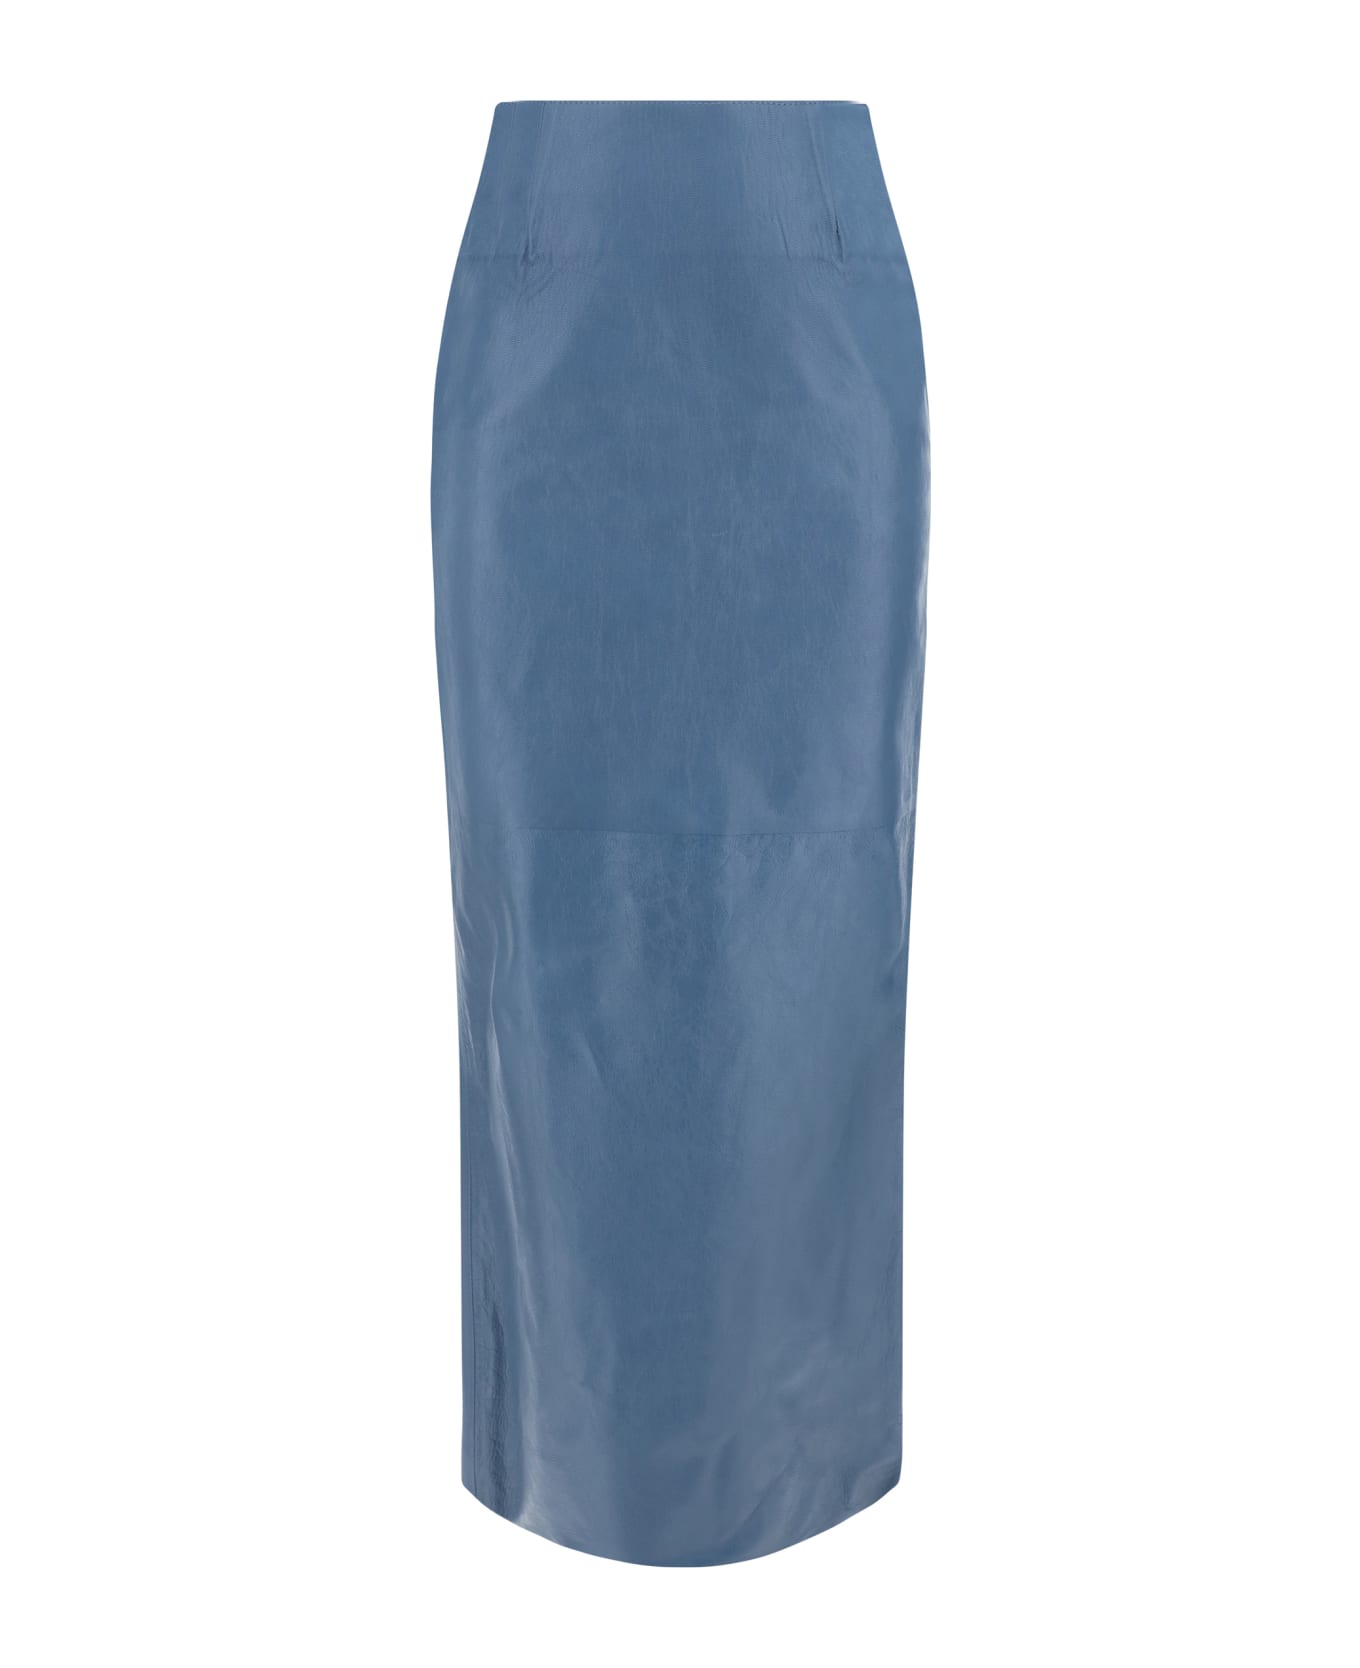 Marni Long Skirt - Gnawed Blue